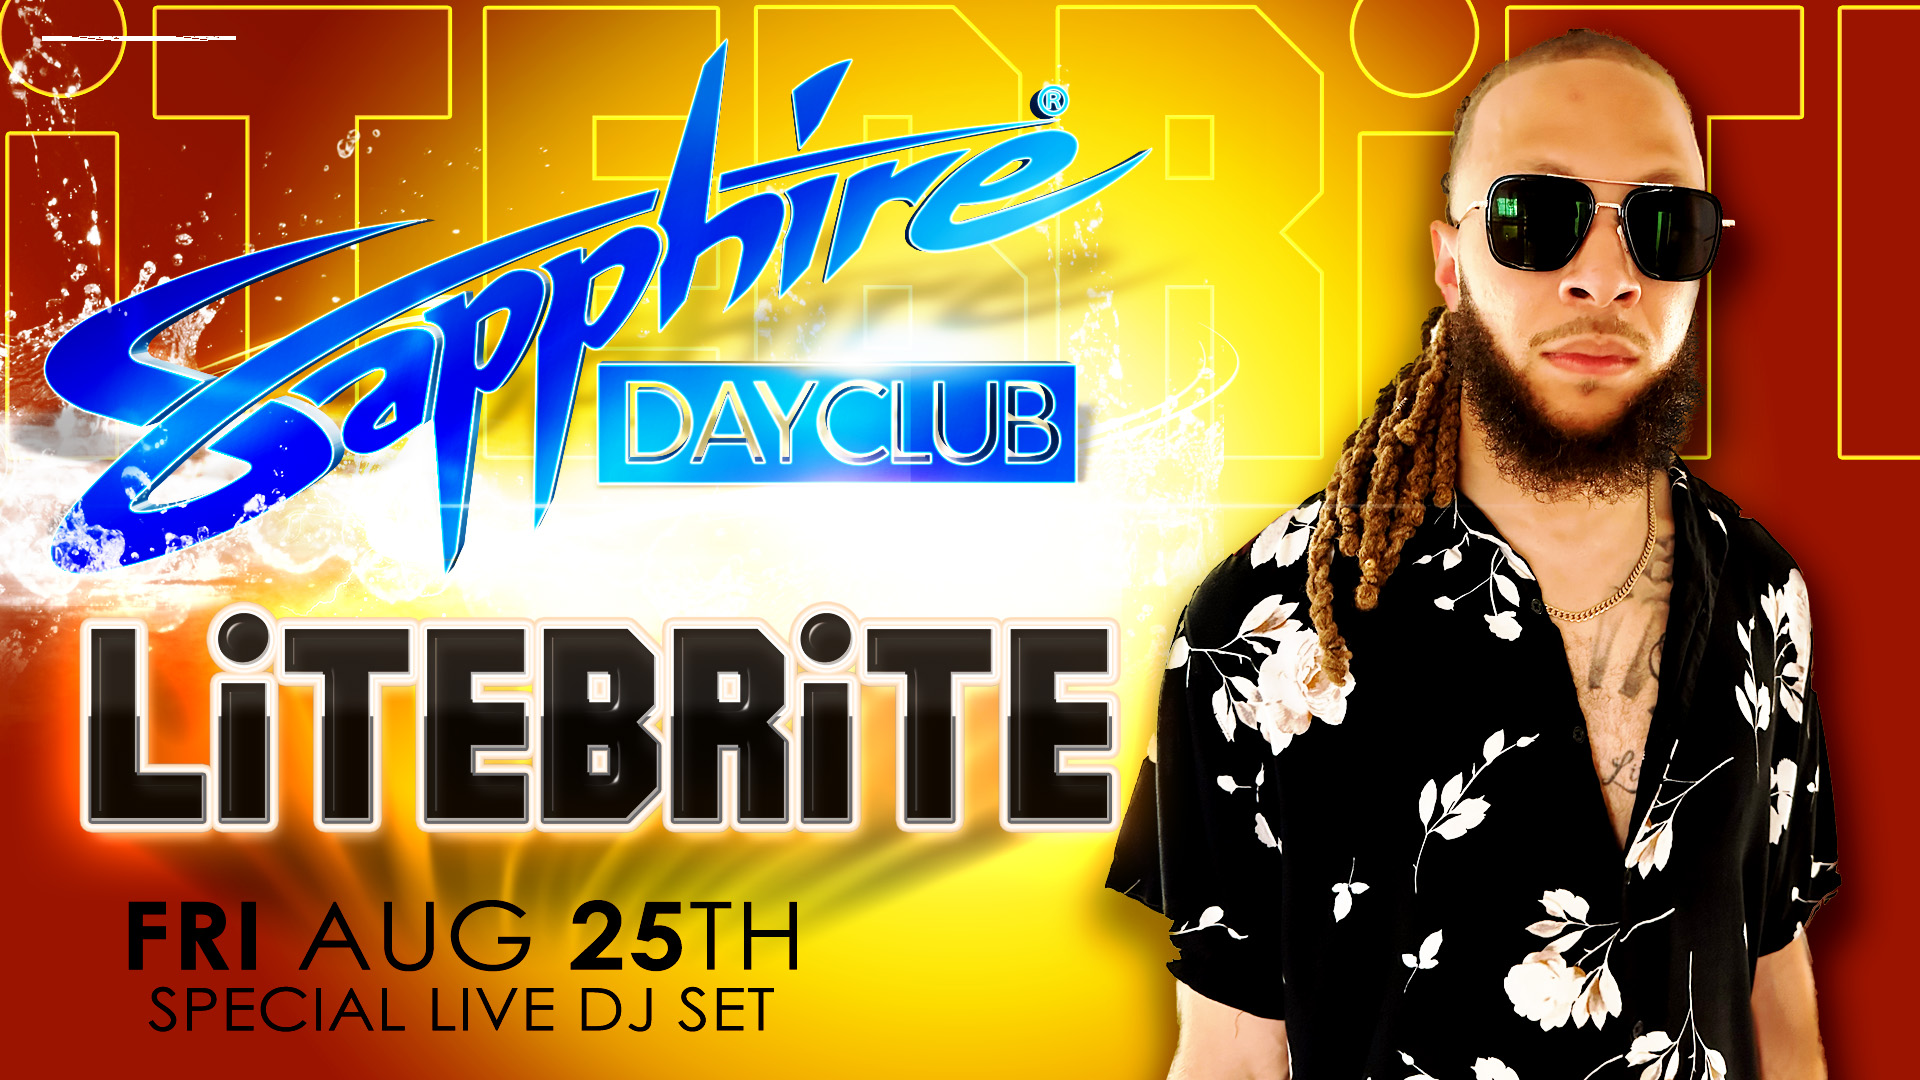 DJ litebrite at Sapphire Pool